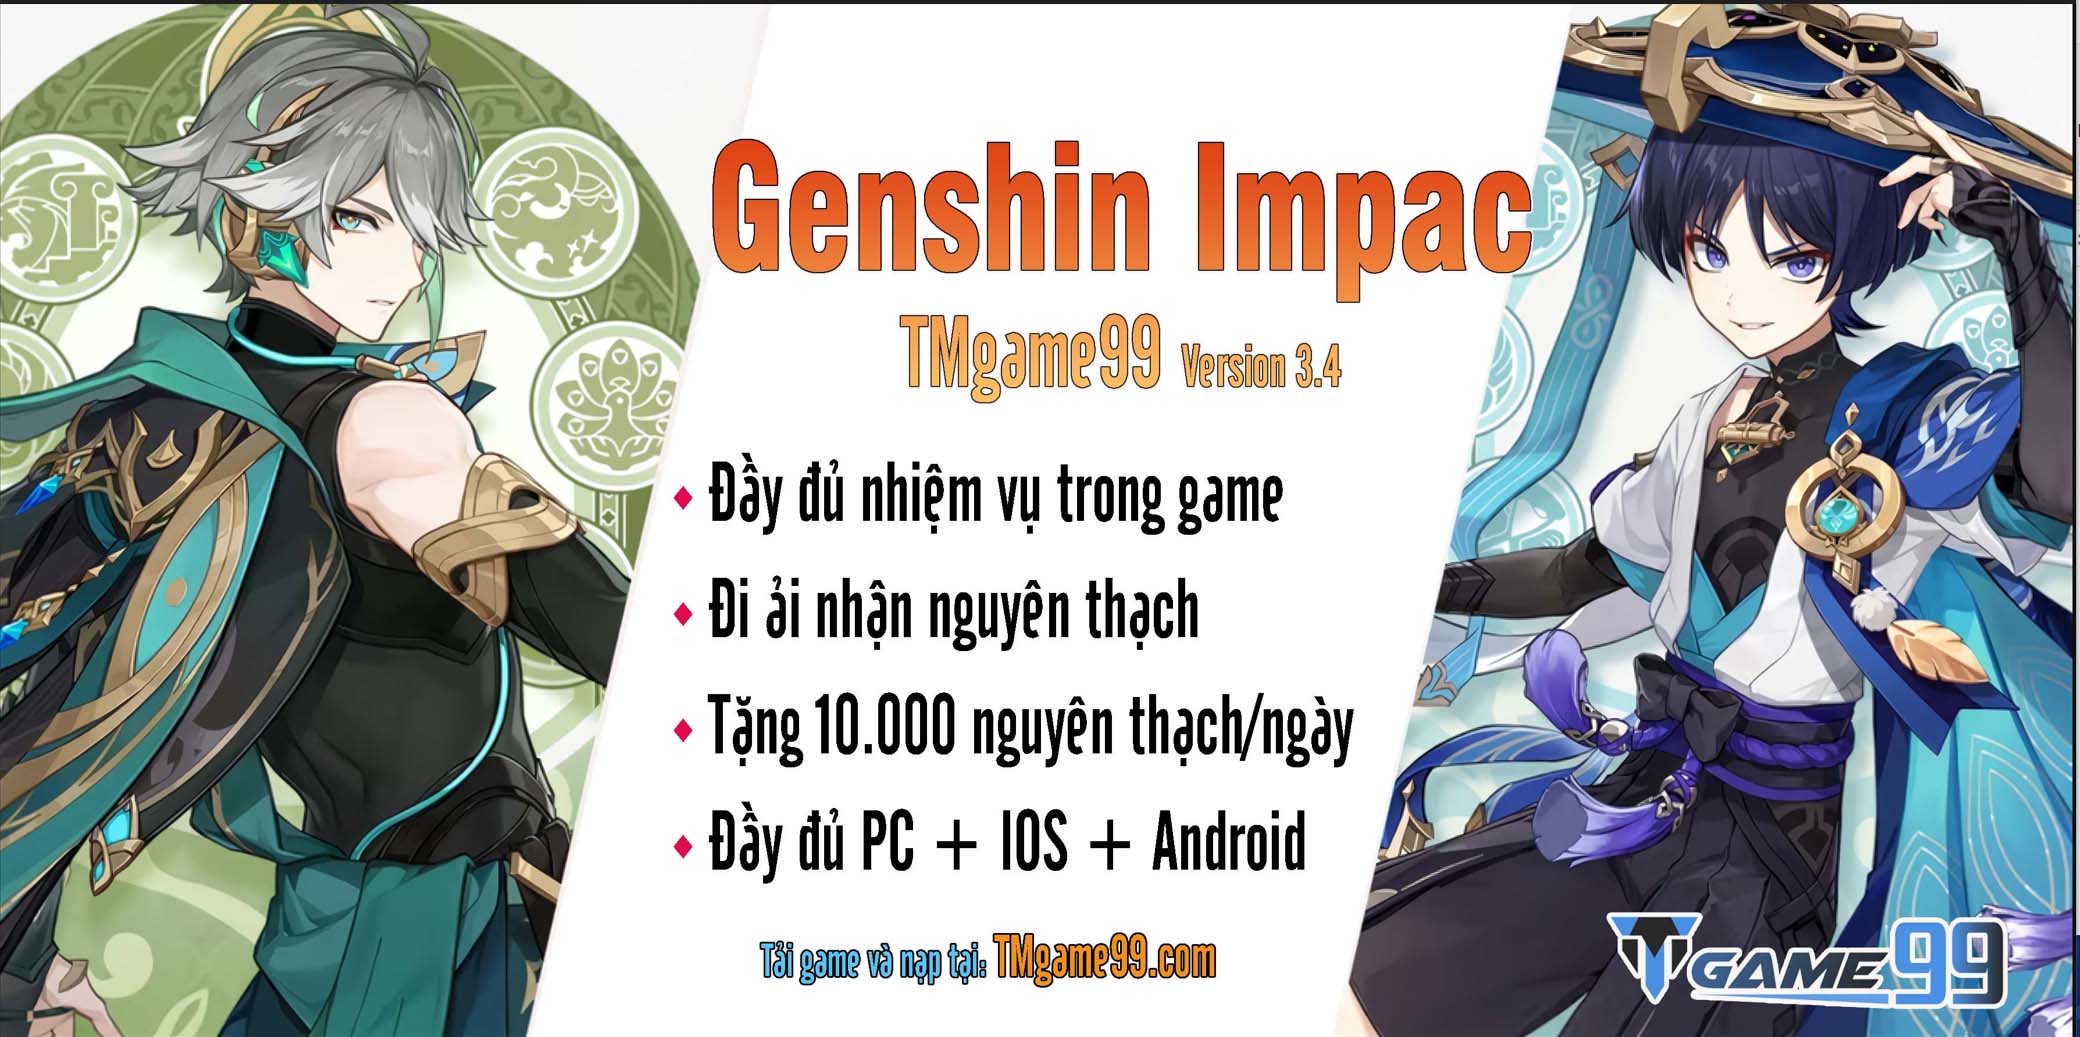 Genshin Impact Tmgame99 3.4 1